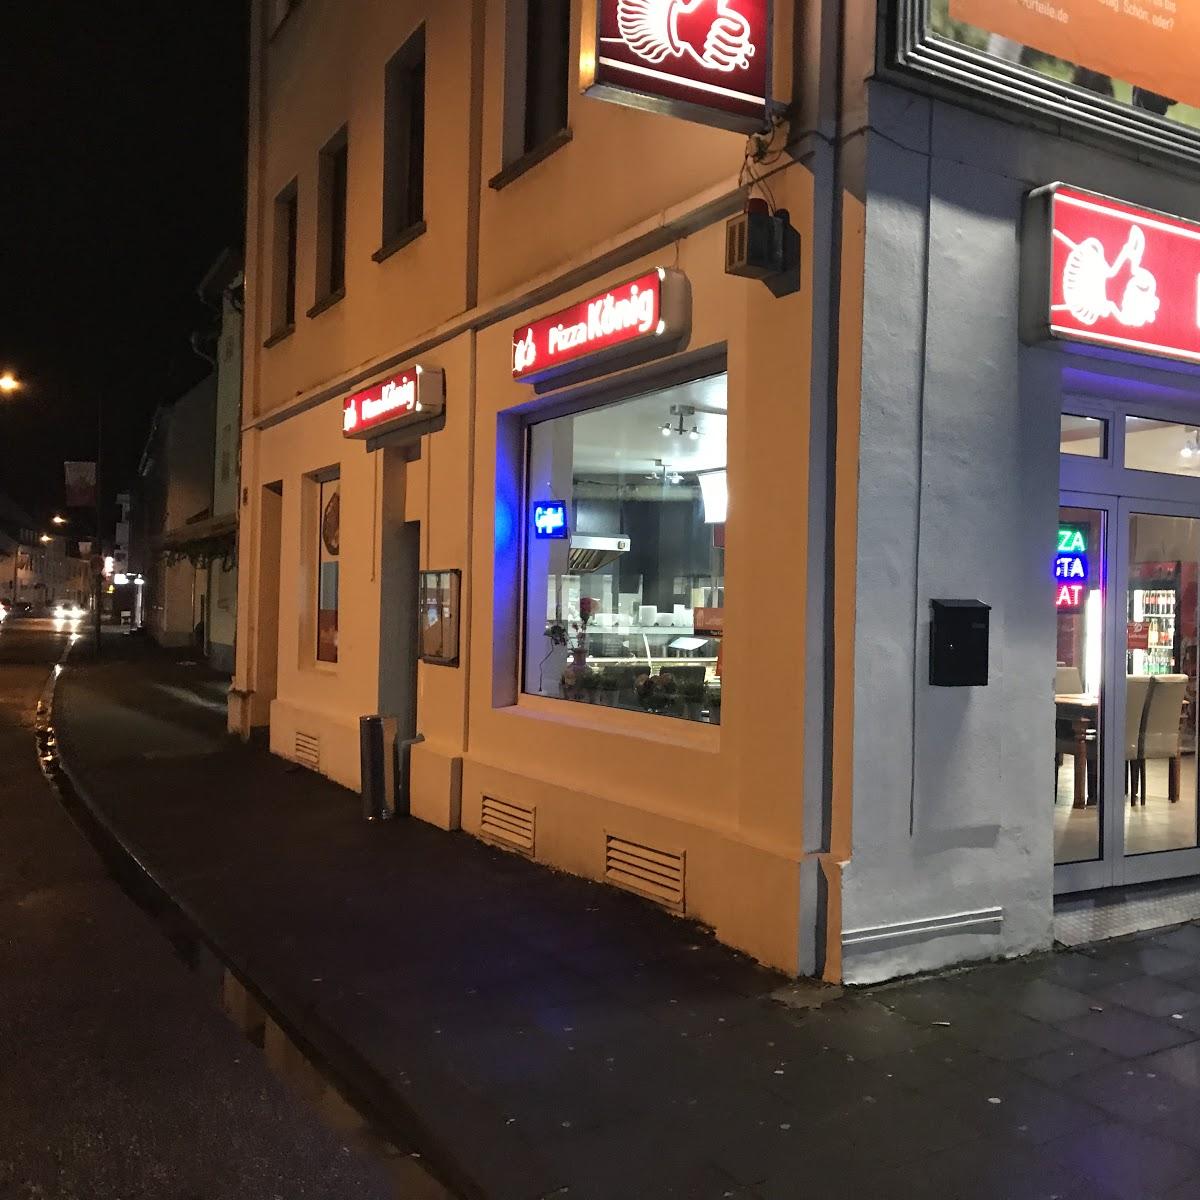 Restaurant "Pizza König Köln" in Köln